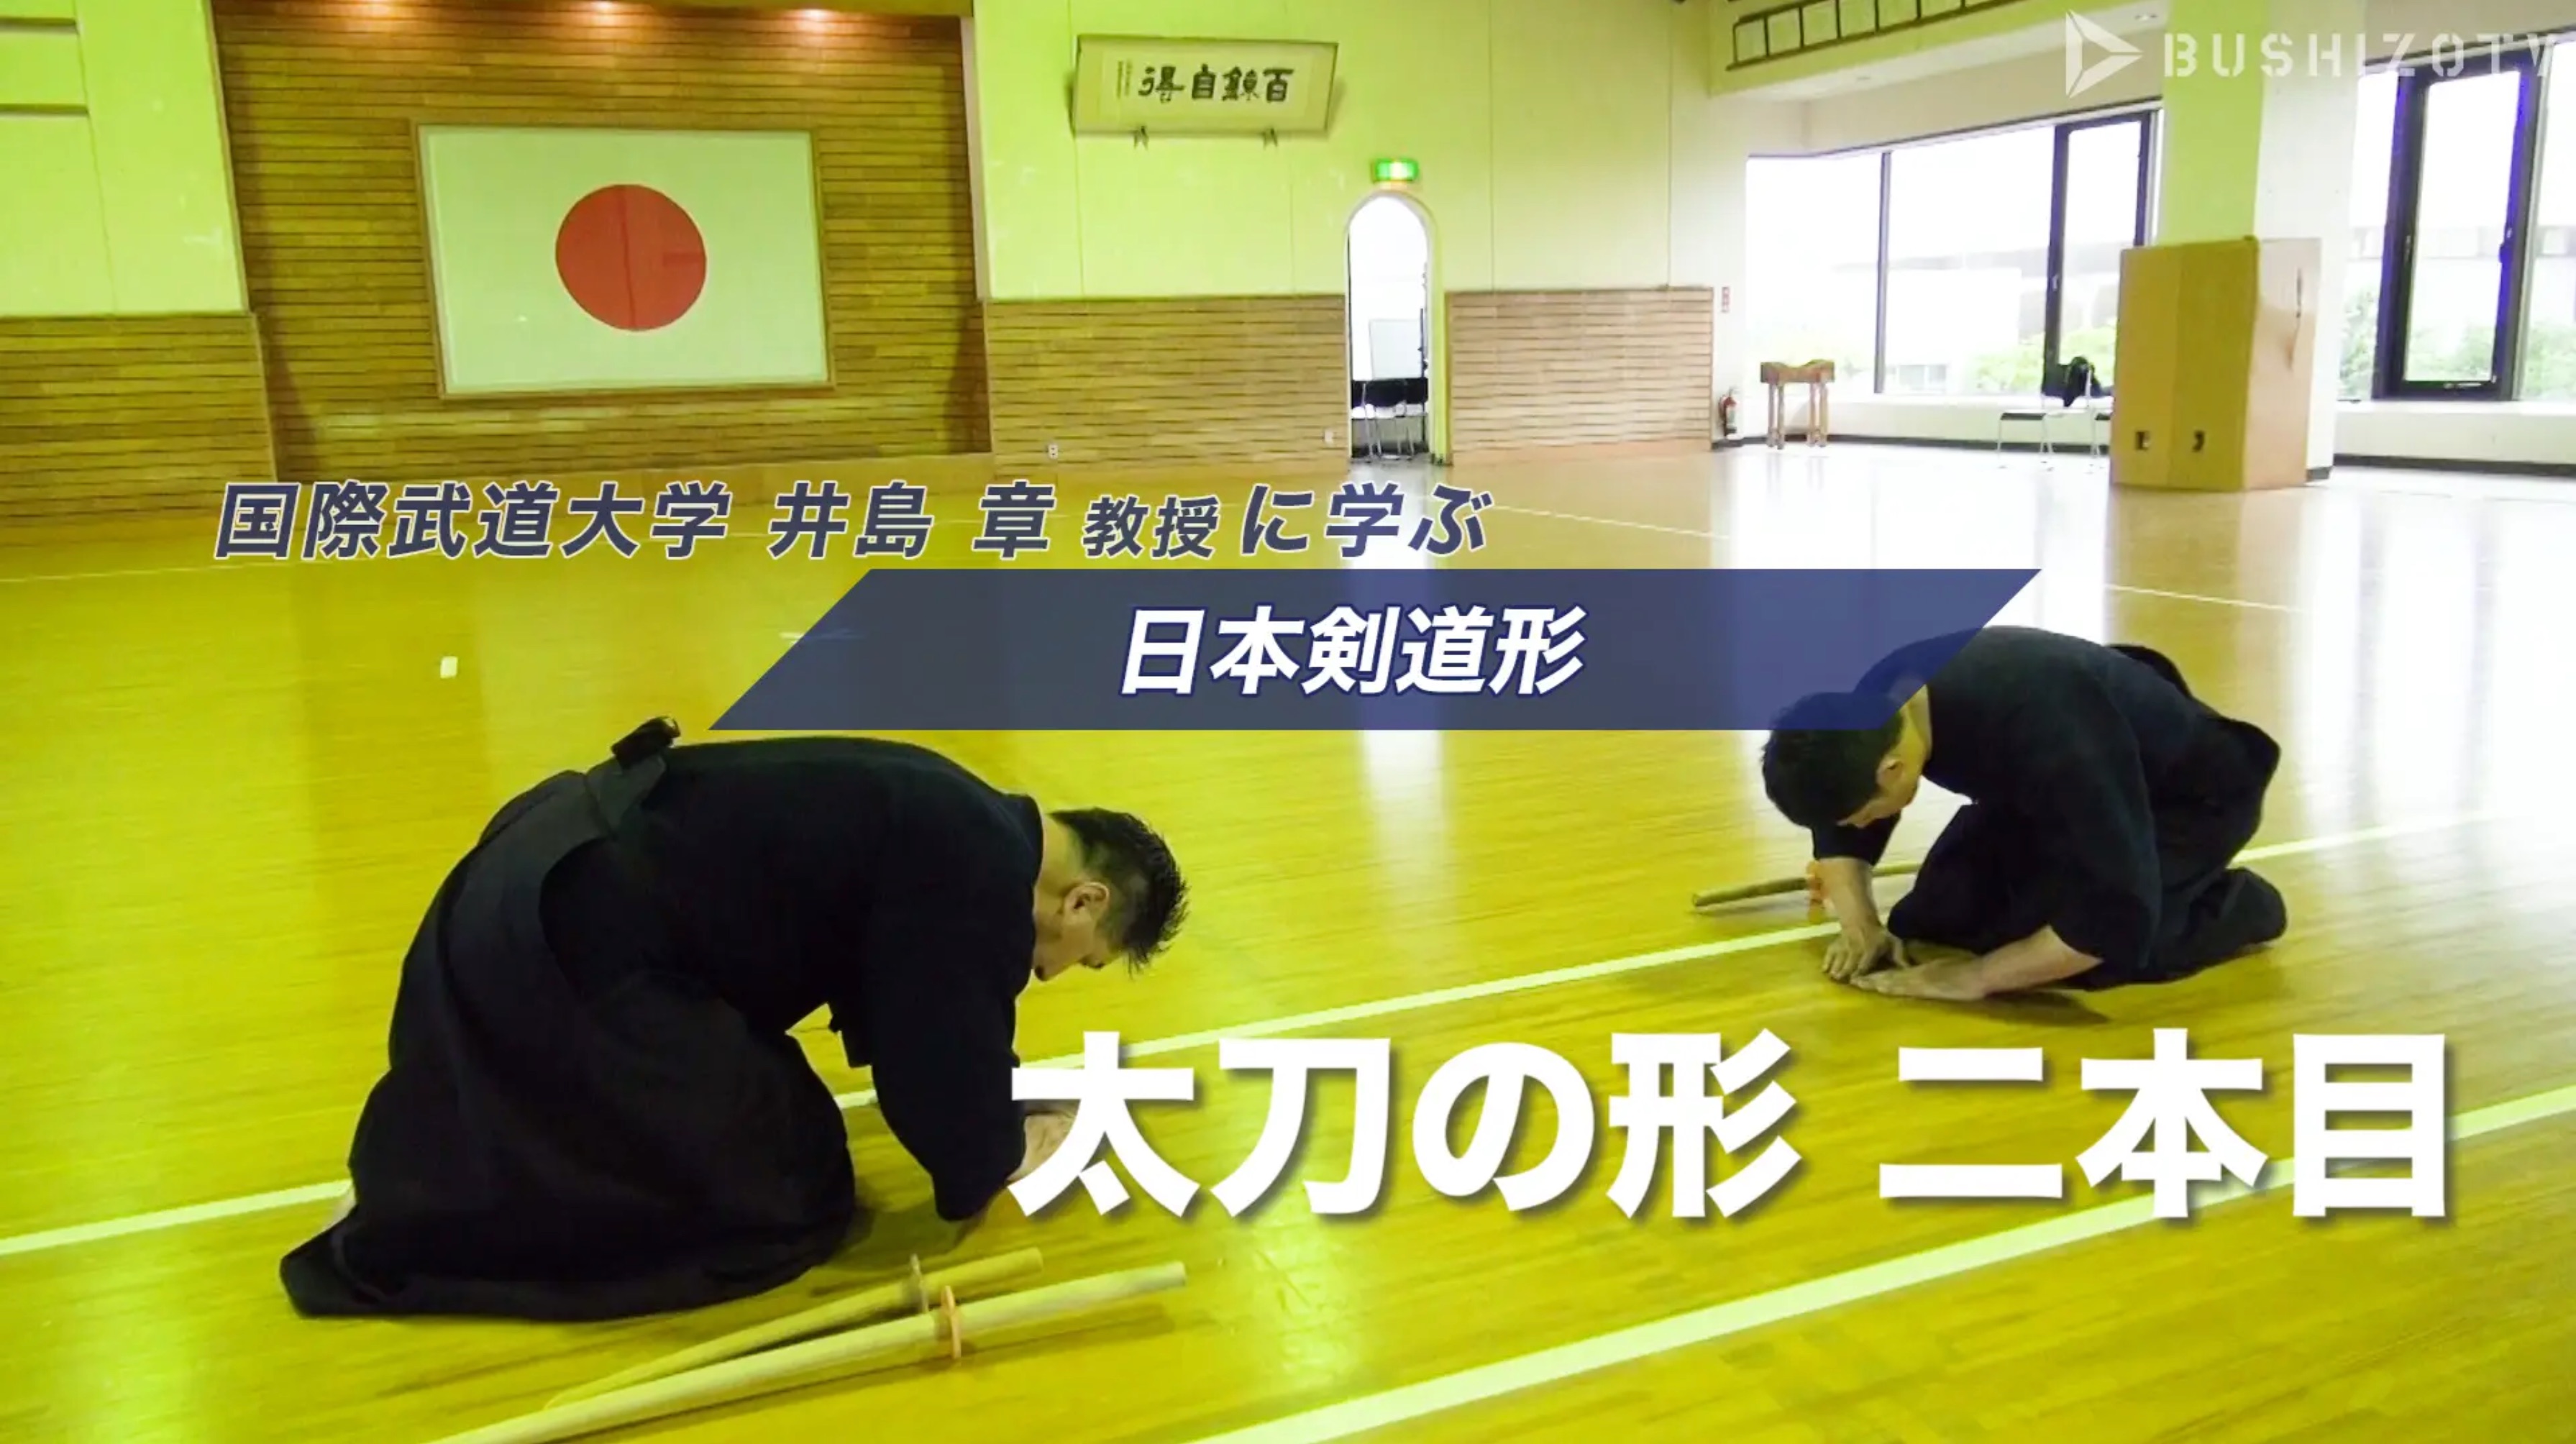 教士八段 井島章 日本剣道形の指導 二本目 Bushizo Tv